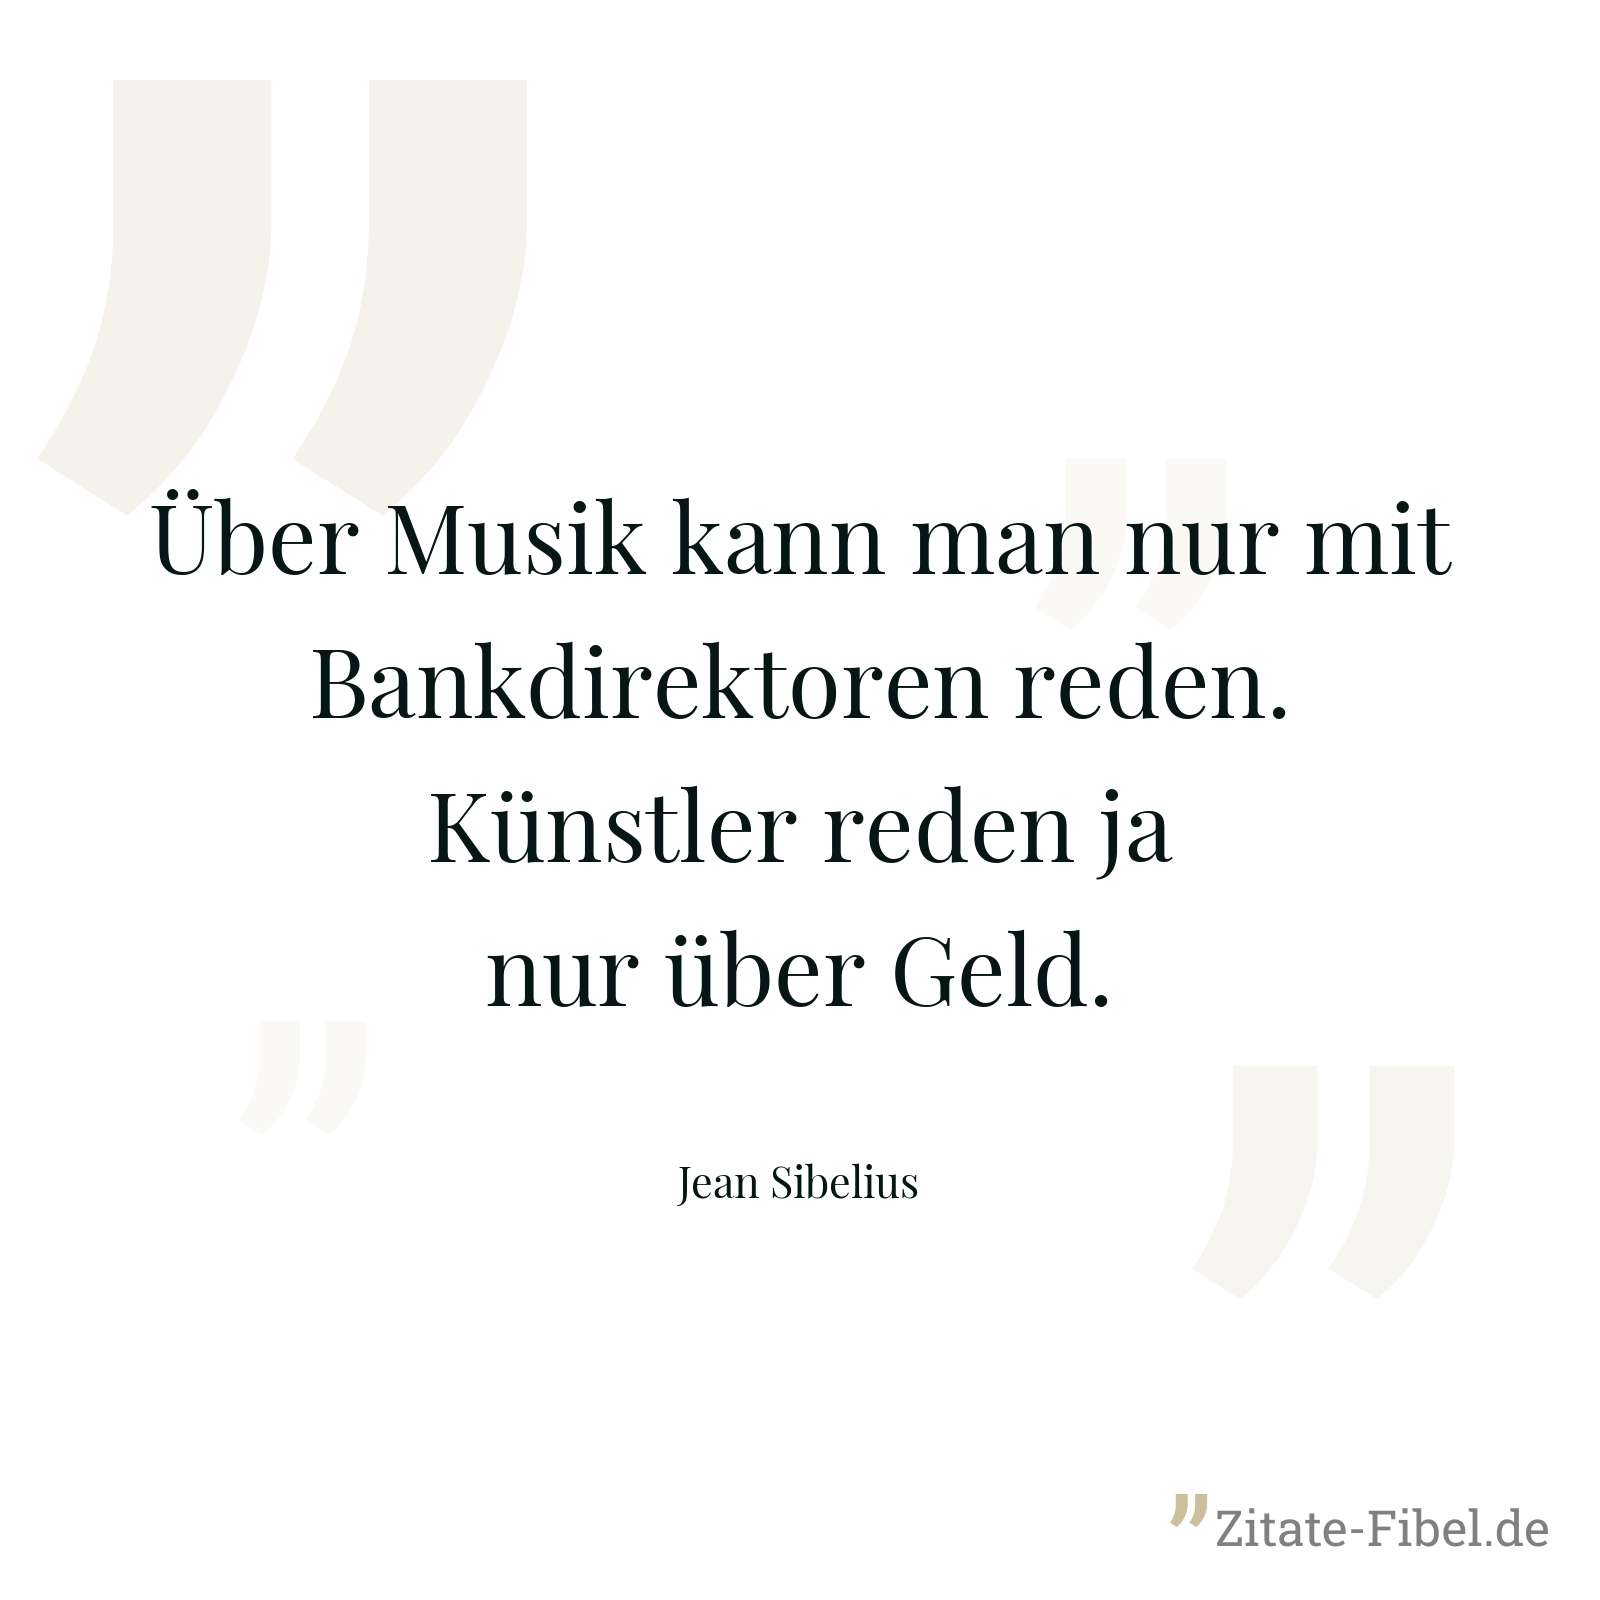 Über Musik kann man nur mit Bankdirektoren reden. Künstler reden ja nur über Geld. - Jean Sibelius